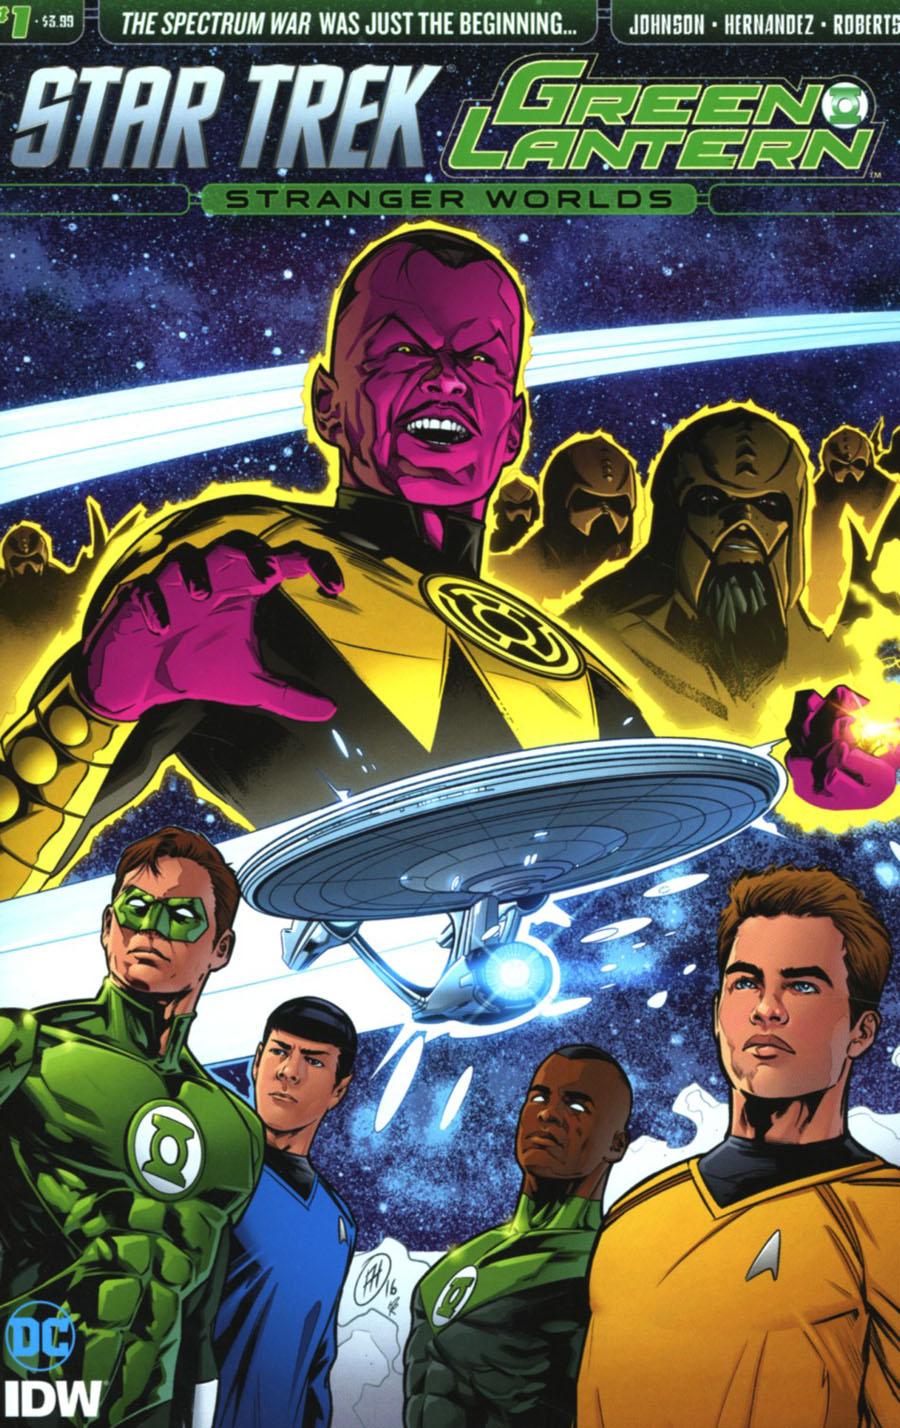 Star Trek Green Lantern Vol. 2 Stranger Worlds #1